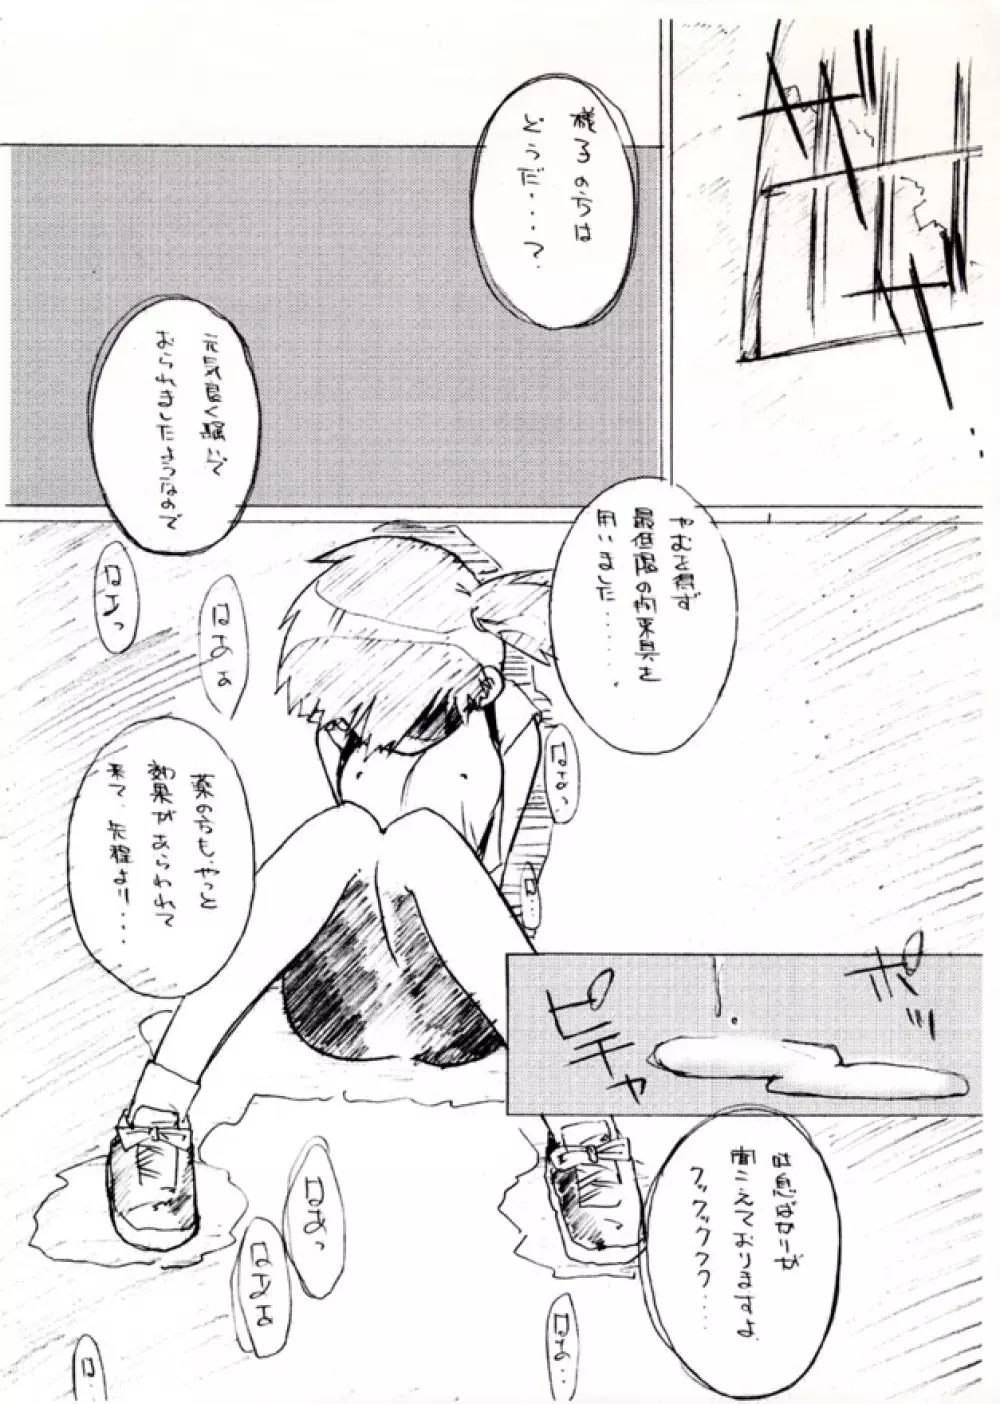 KASUMIX XPLOSION Kasumi Comic part5 12ページ